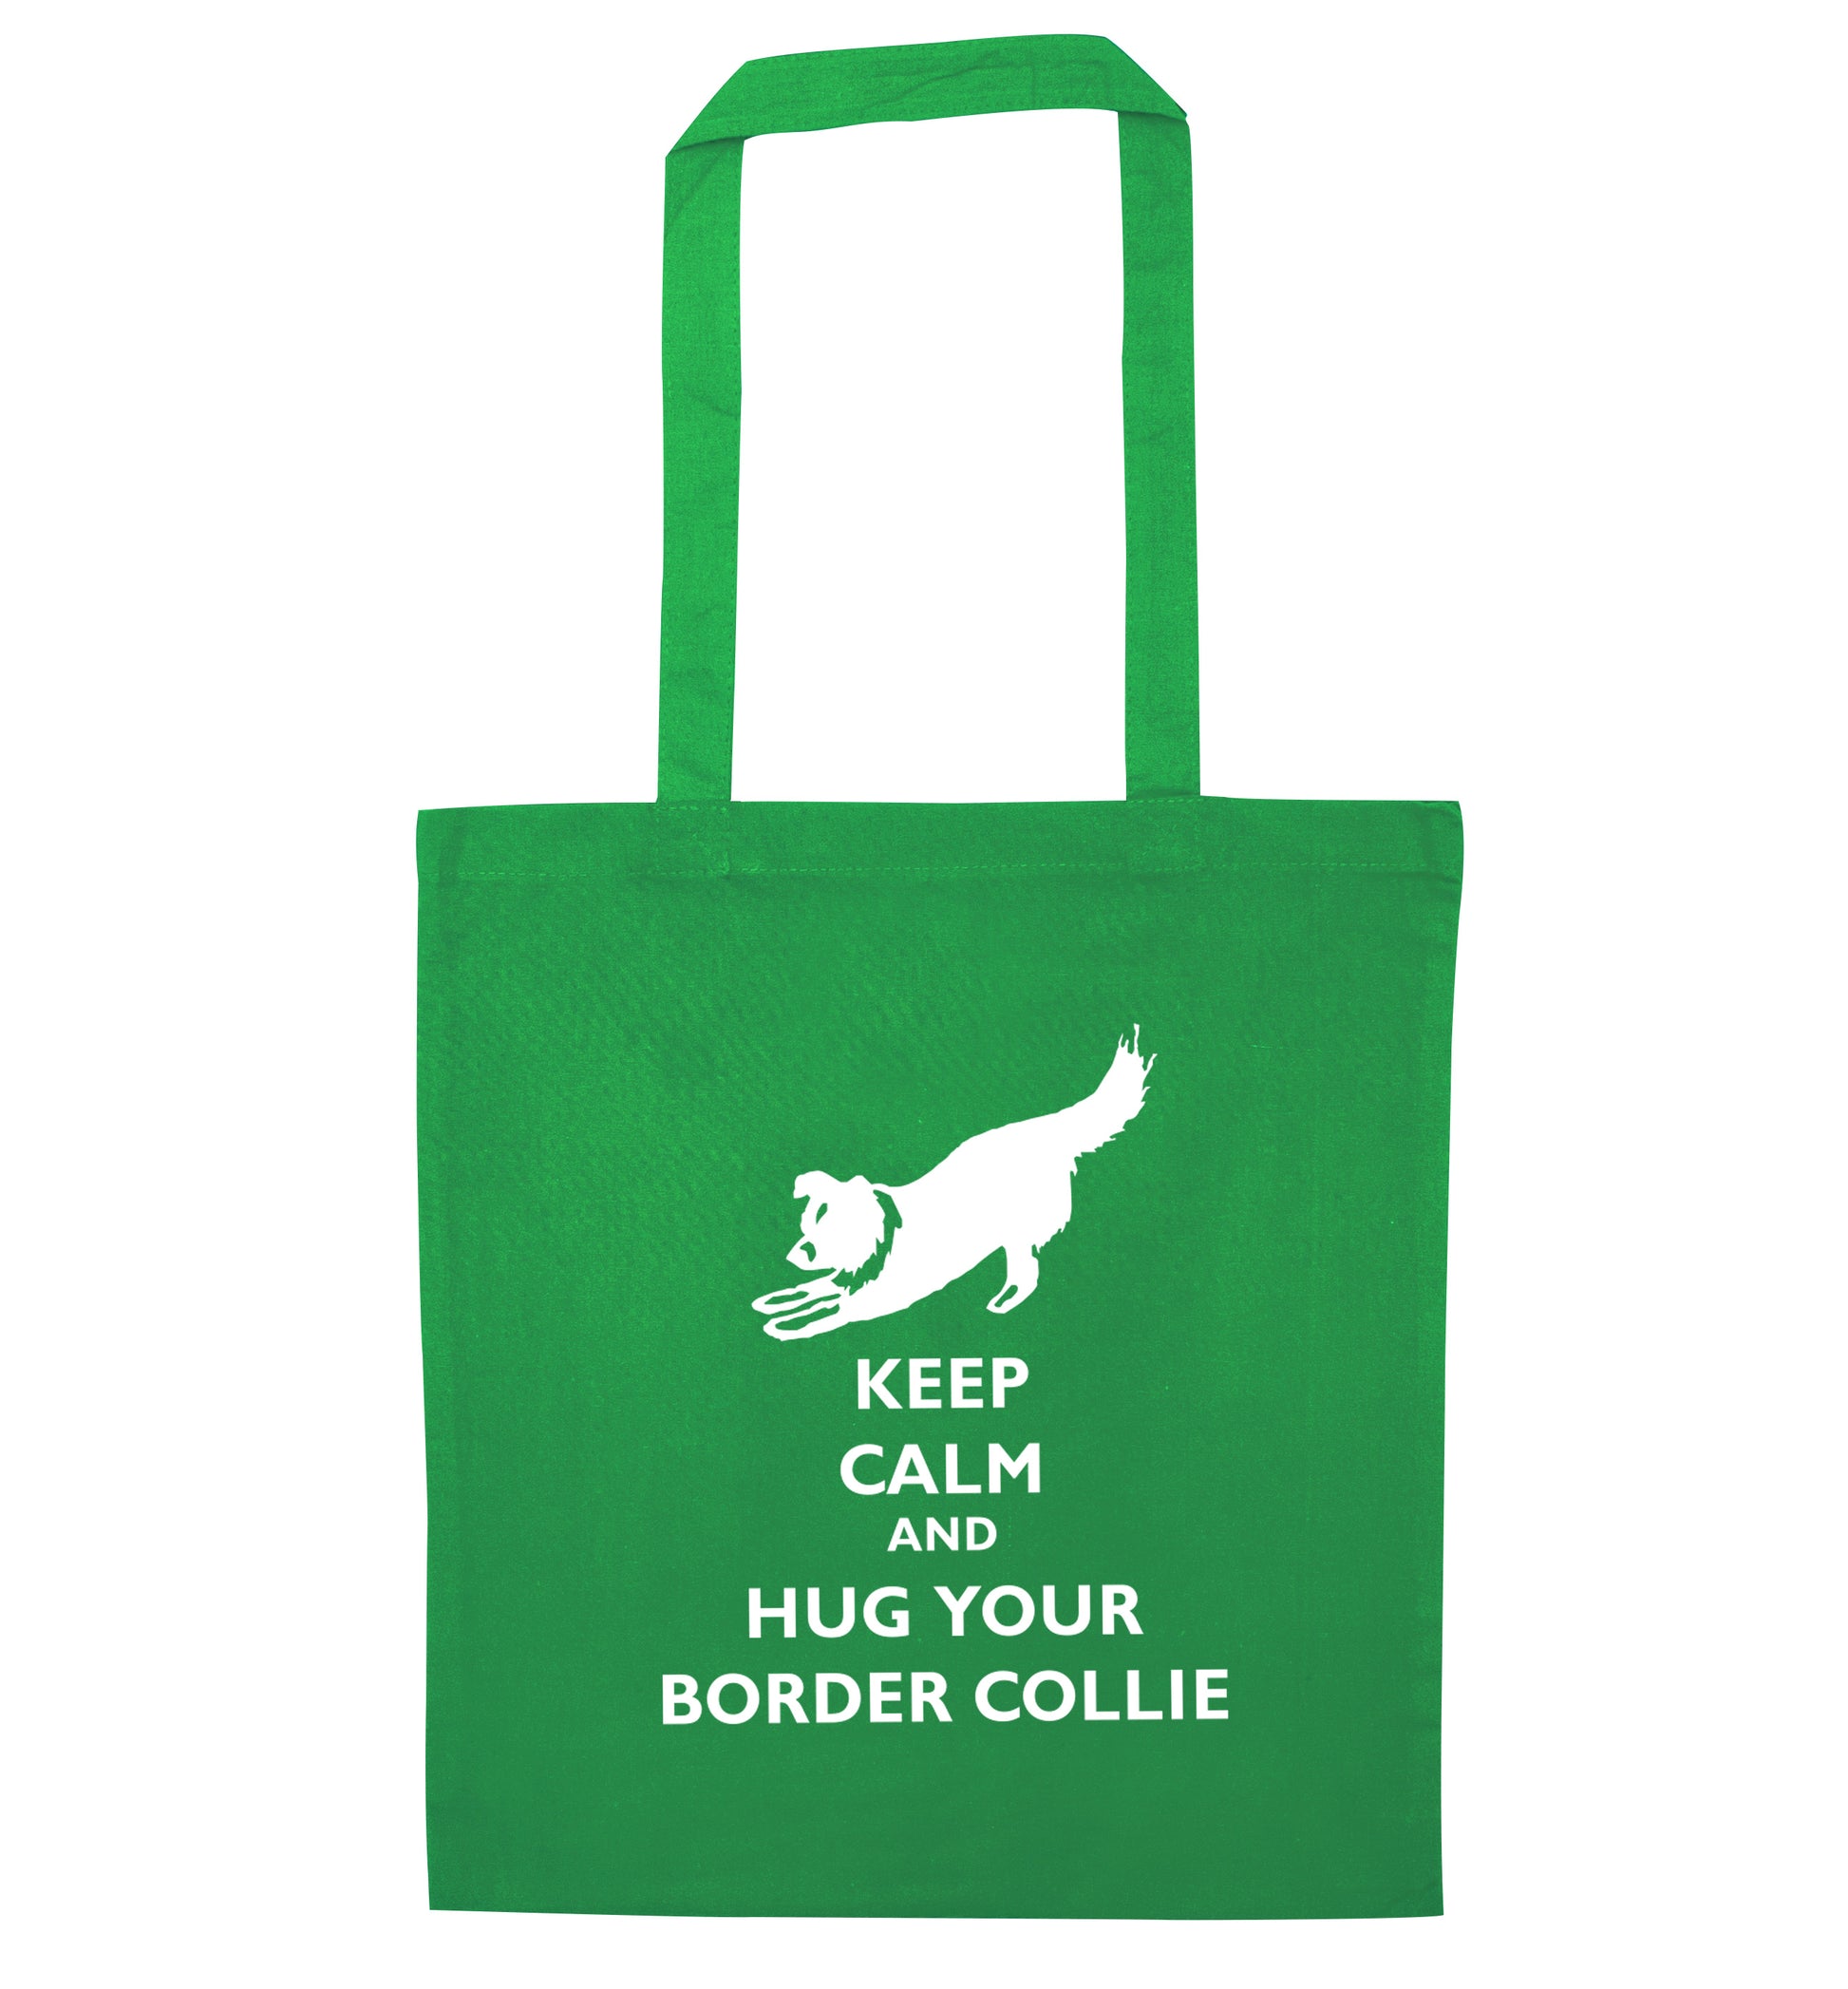 Keep calm and hug your border collie green tote bag